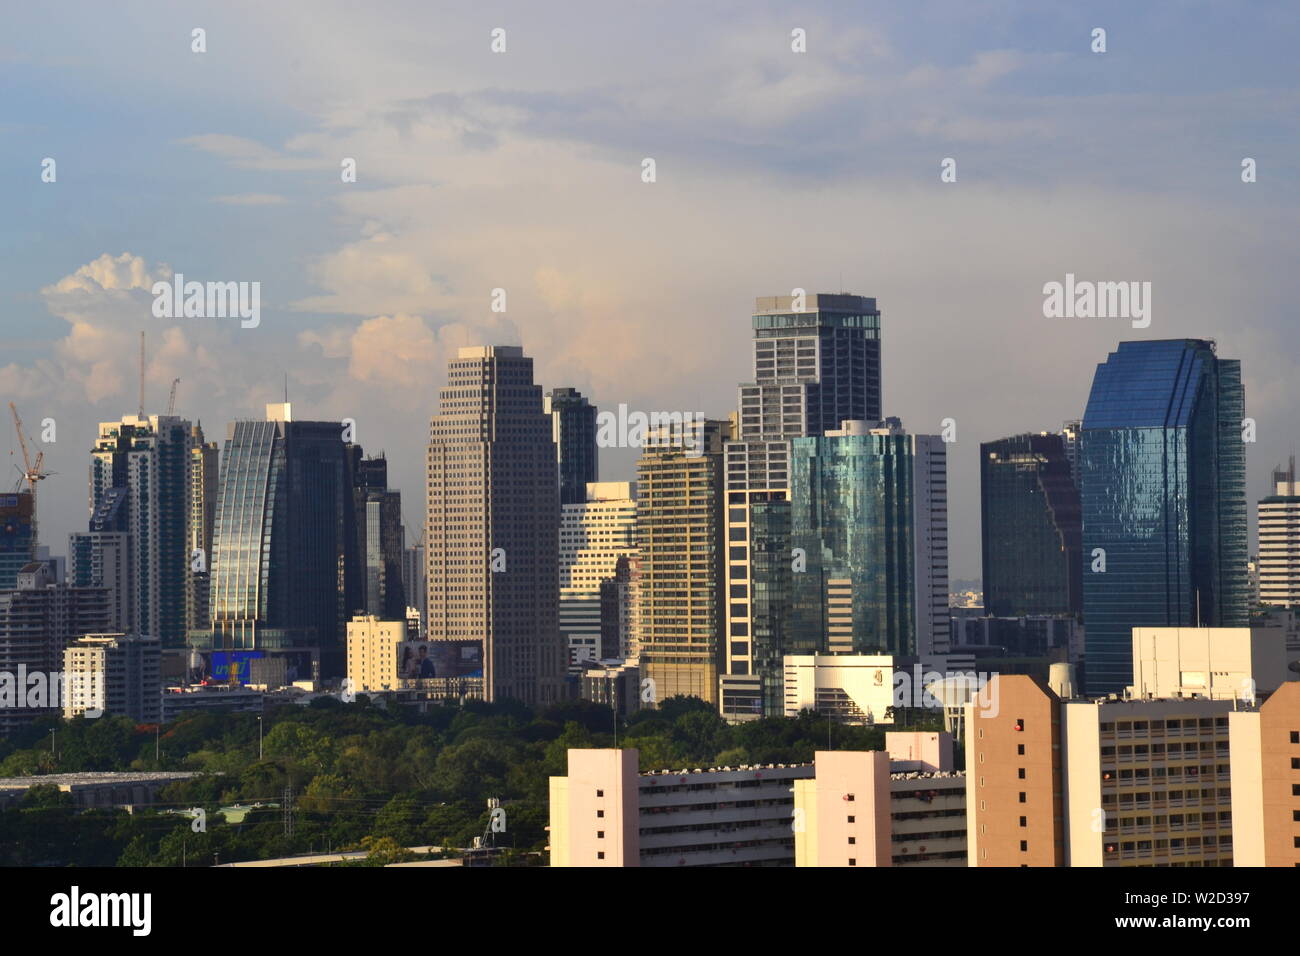 Una vista de alto nivel de rascacielos en el centro de Bangkok, Tailandia, mirando hacia el norte desde el distrito de Sathorn Foto de stock